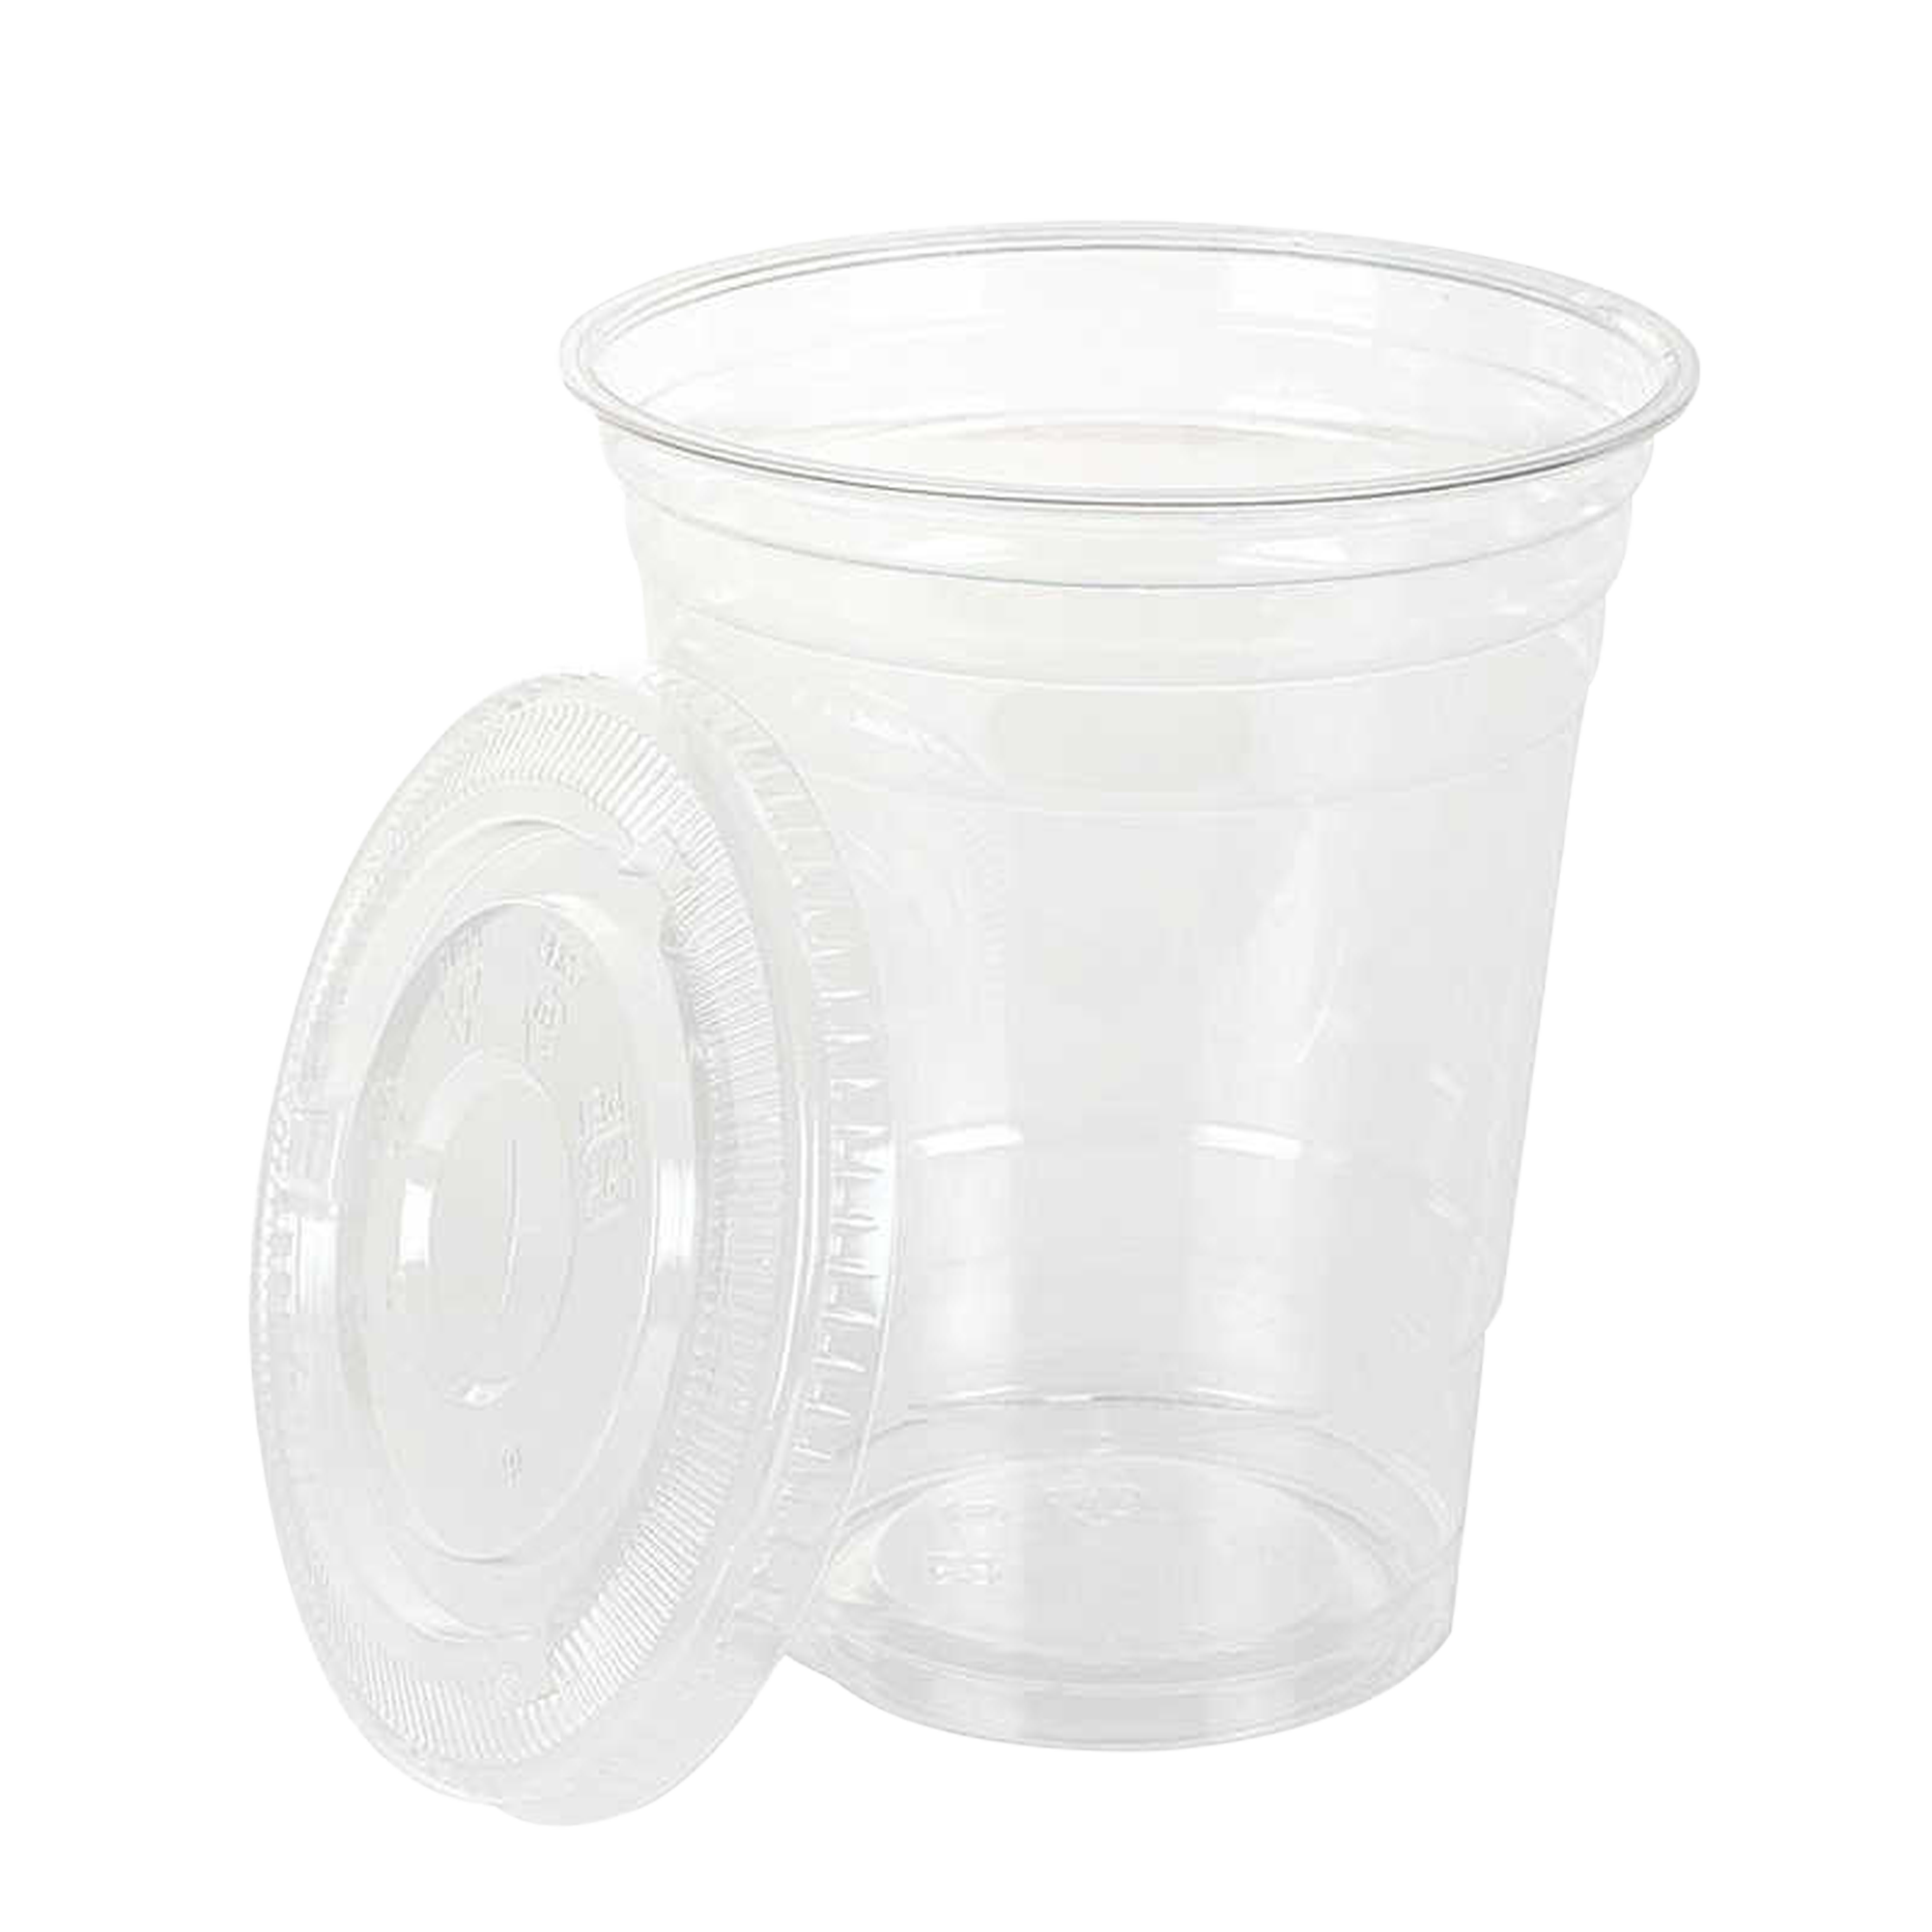 Descartables-Genta - Vasos transparentes 12, 14 y 16 con tapa.